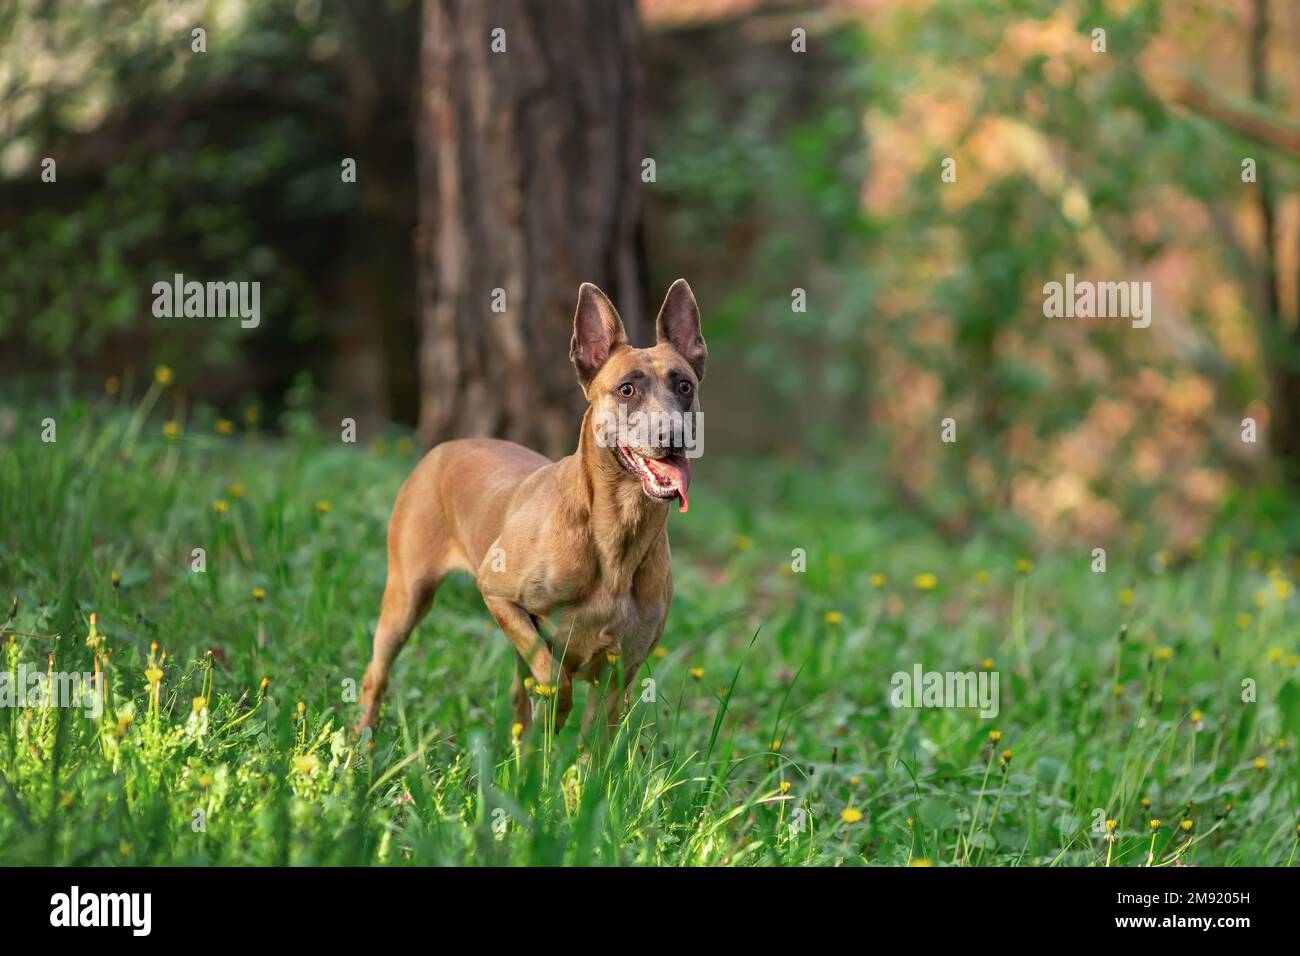 Giovane cane di razza belga malinois camminando all'aperto Foto Stock